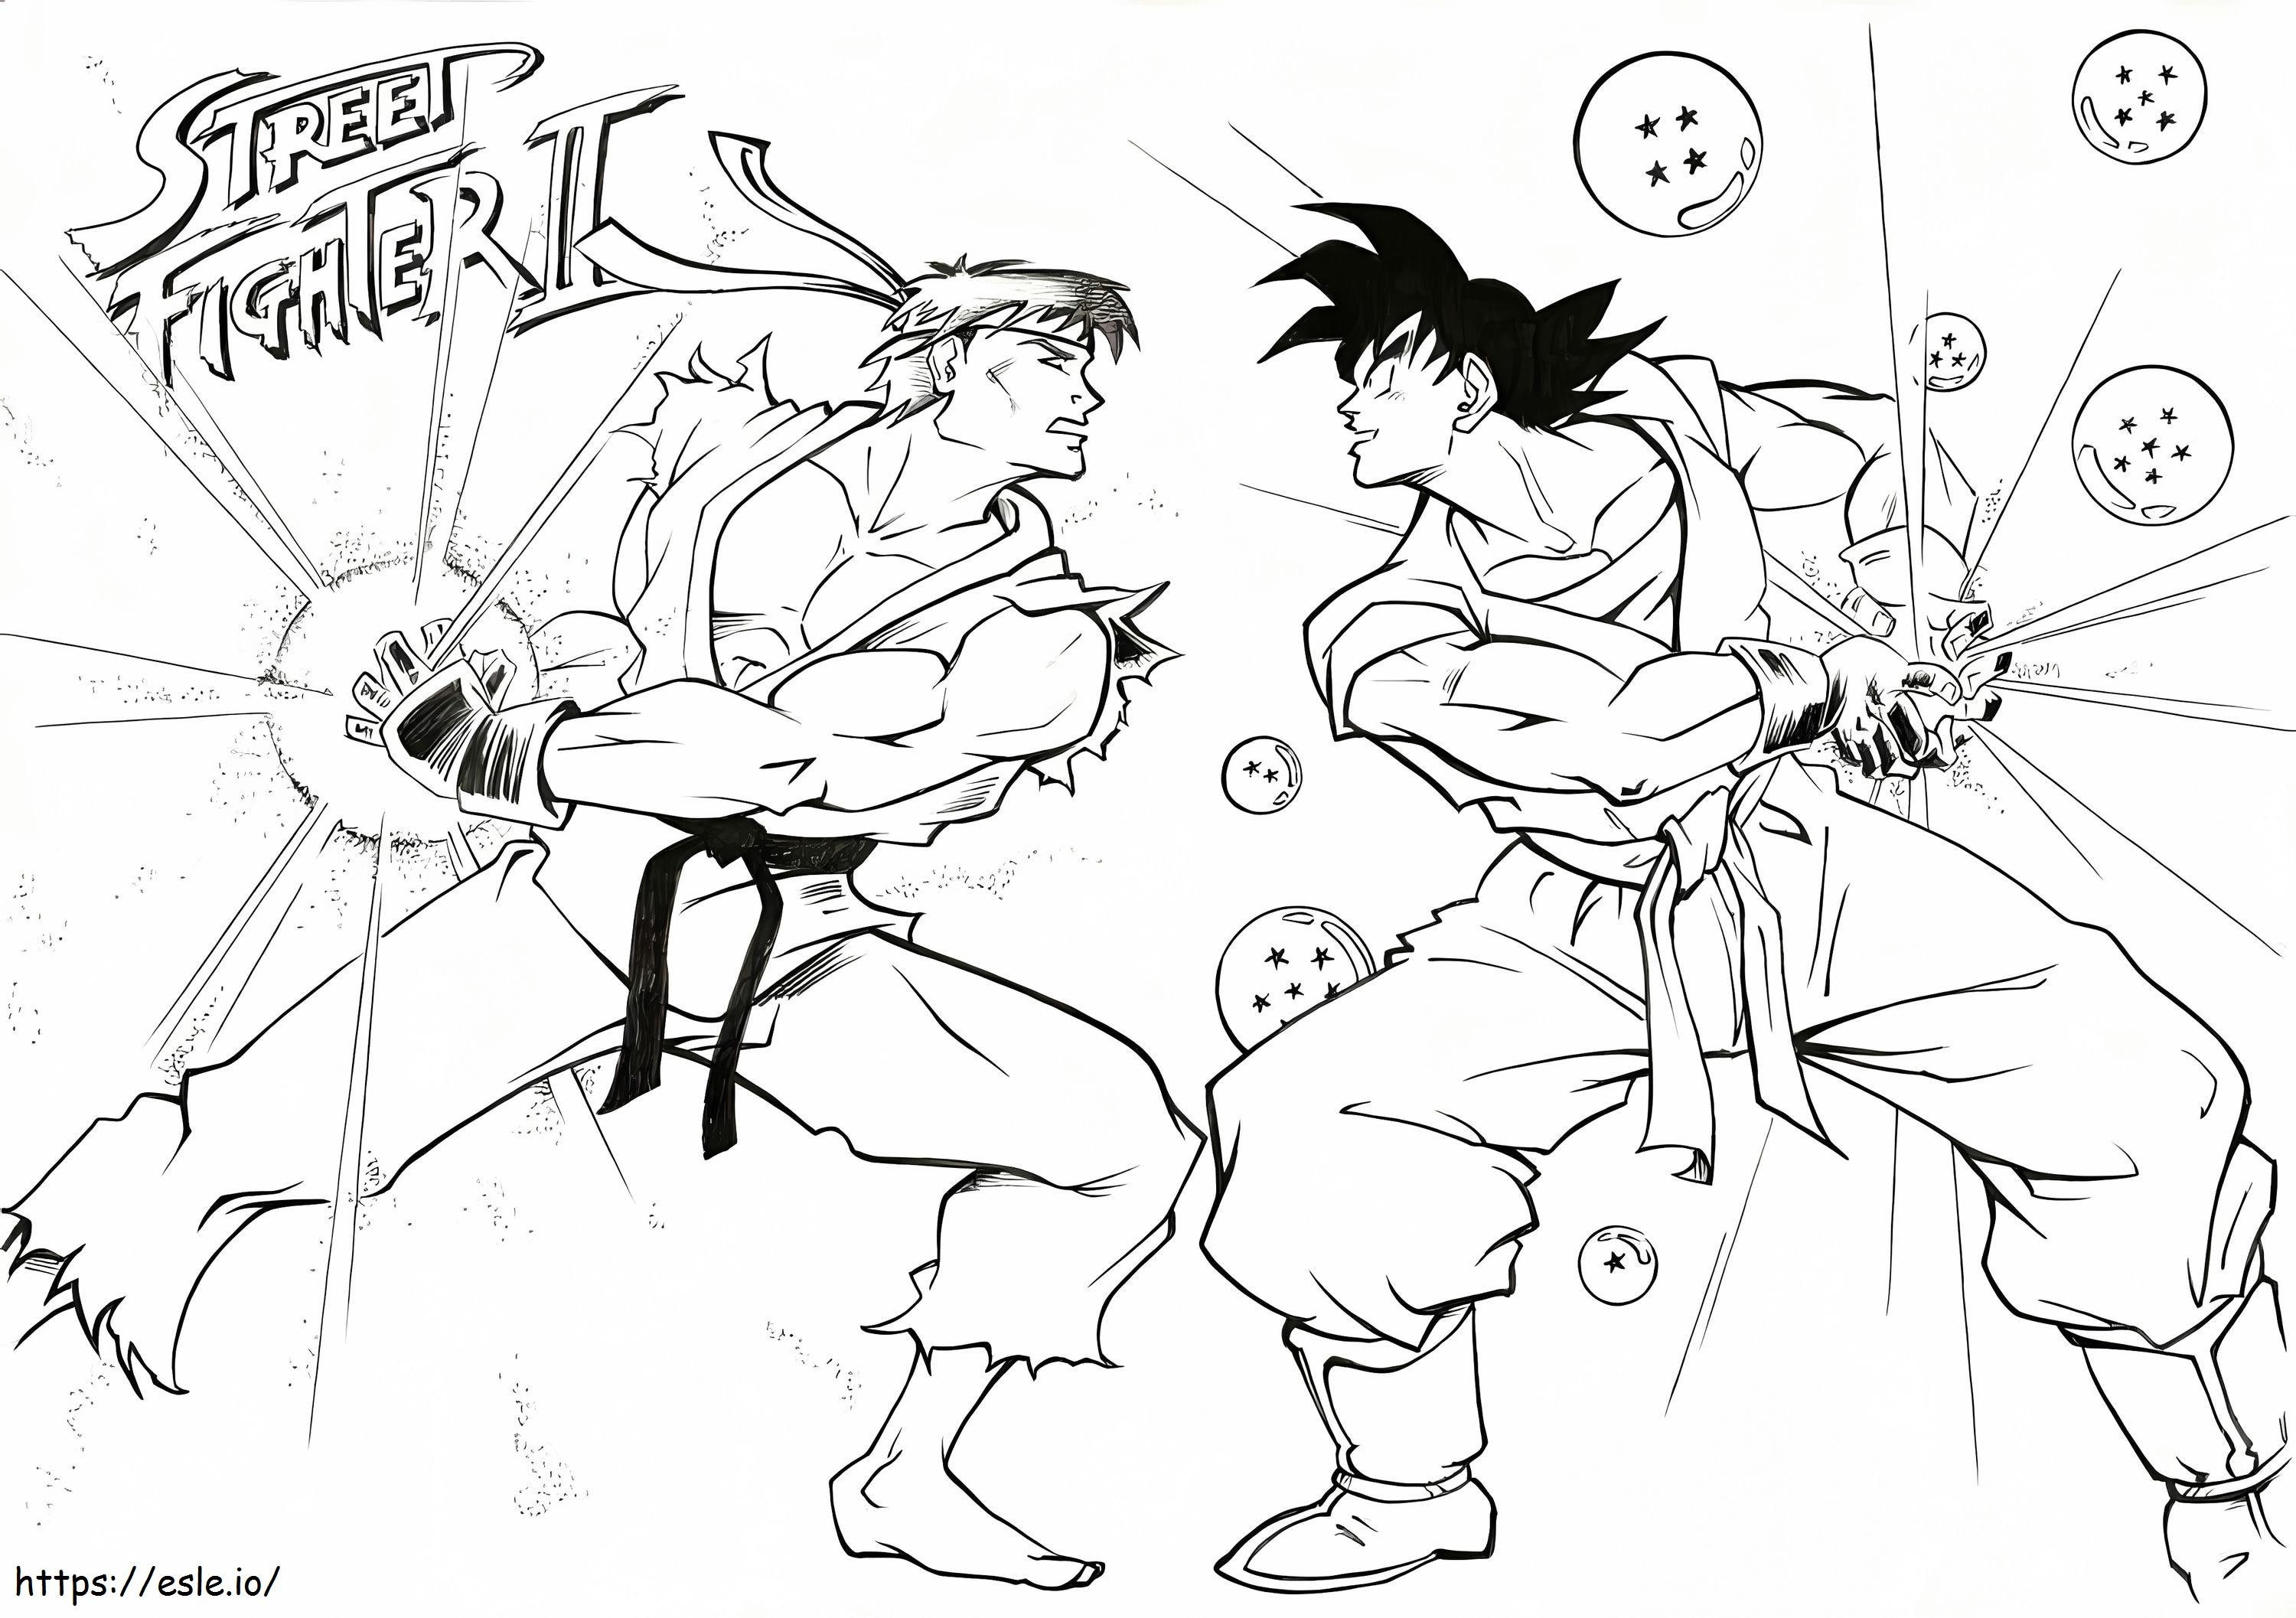 Ryu kontra Goku kolorowanka